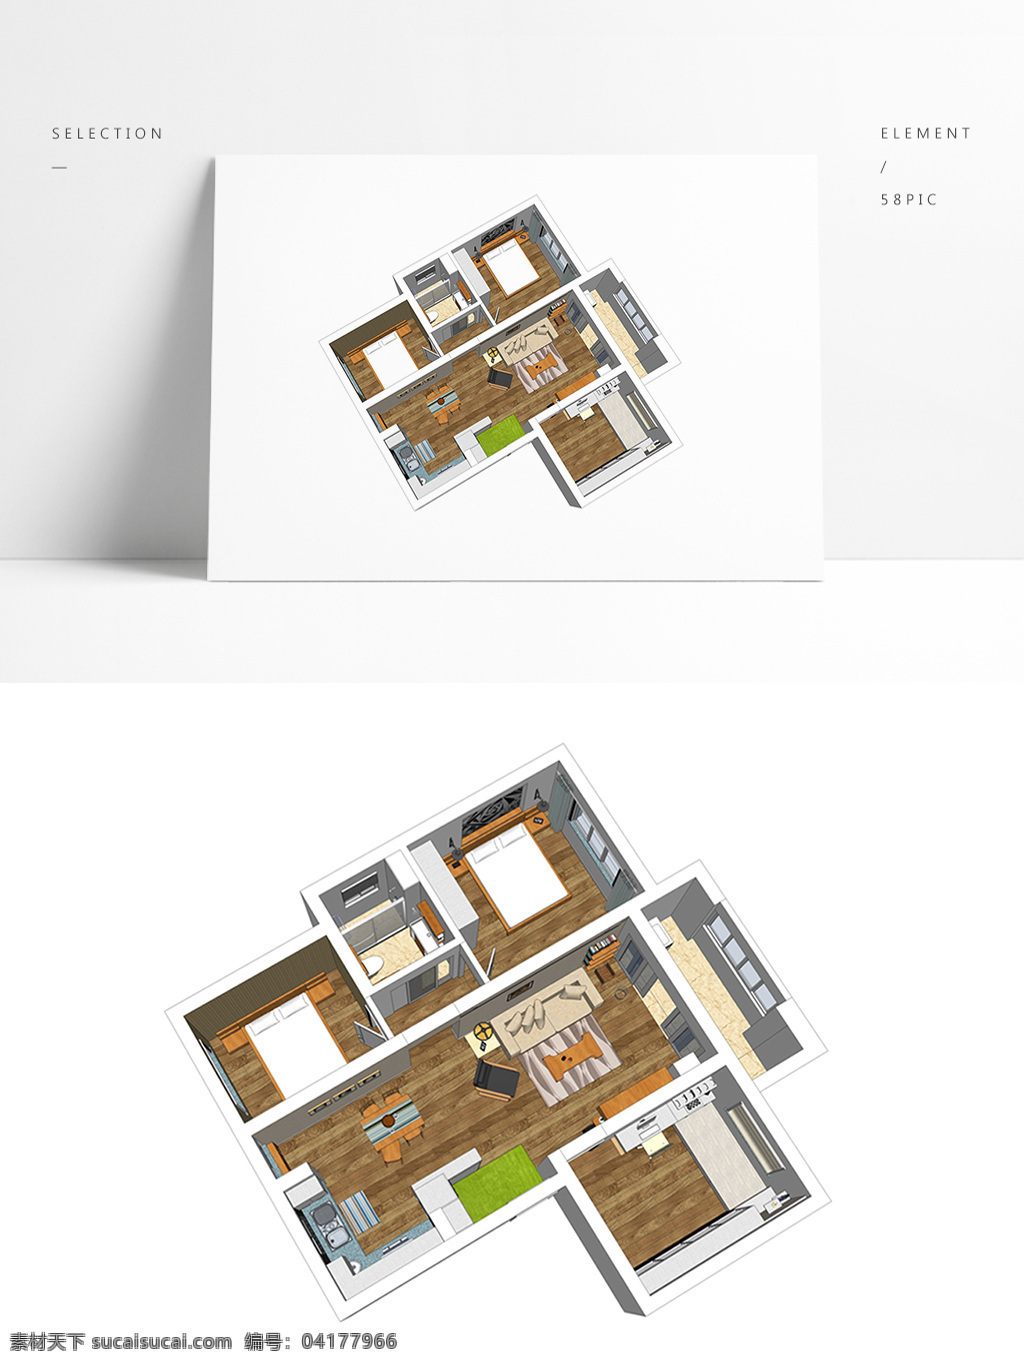 日式 风格 su 全景 模型 室内空间设计 住宅室内设计 样板房 透视 3d模型 su模型 草图大师模型 家具模型 日式风格设计